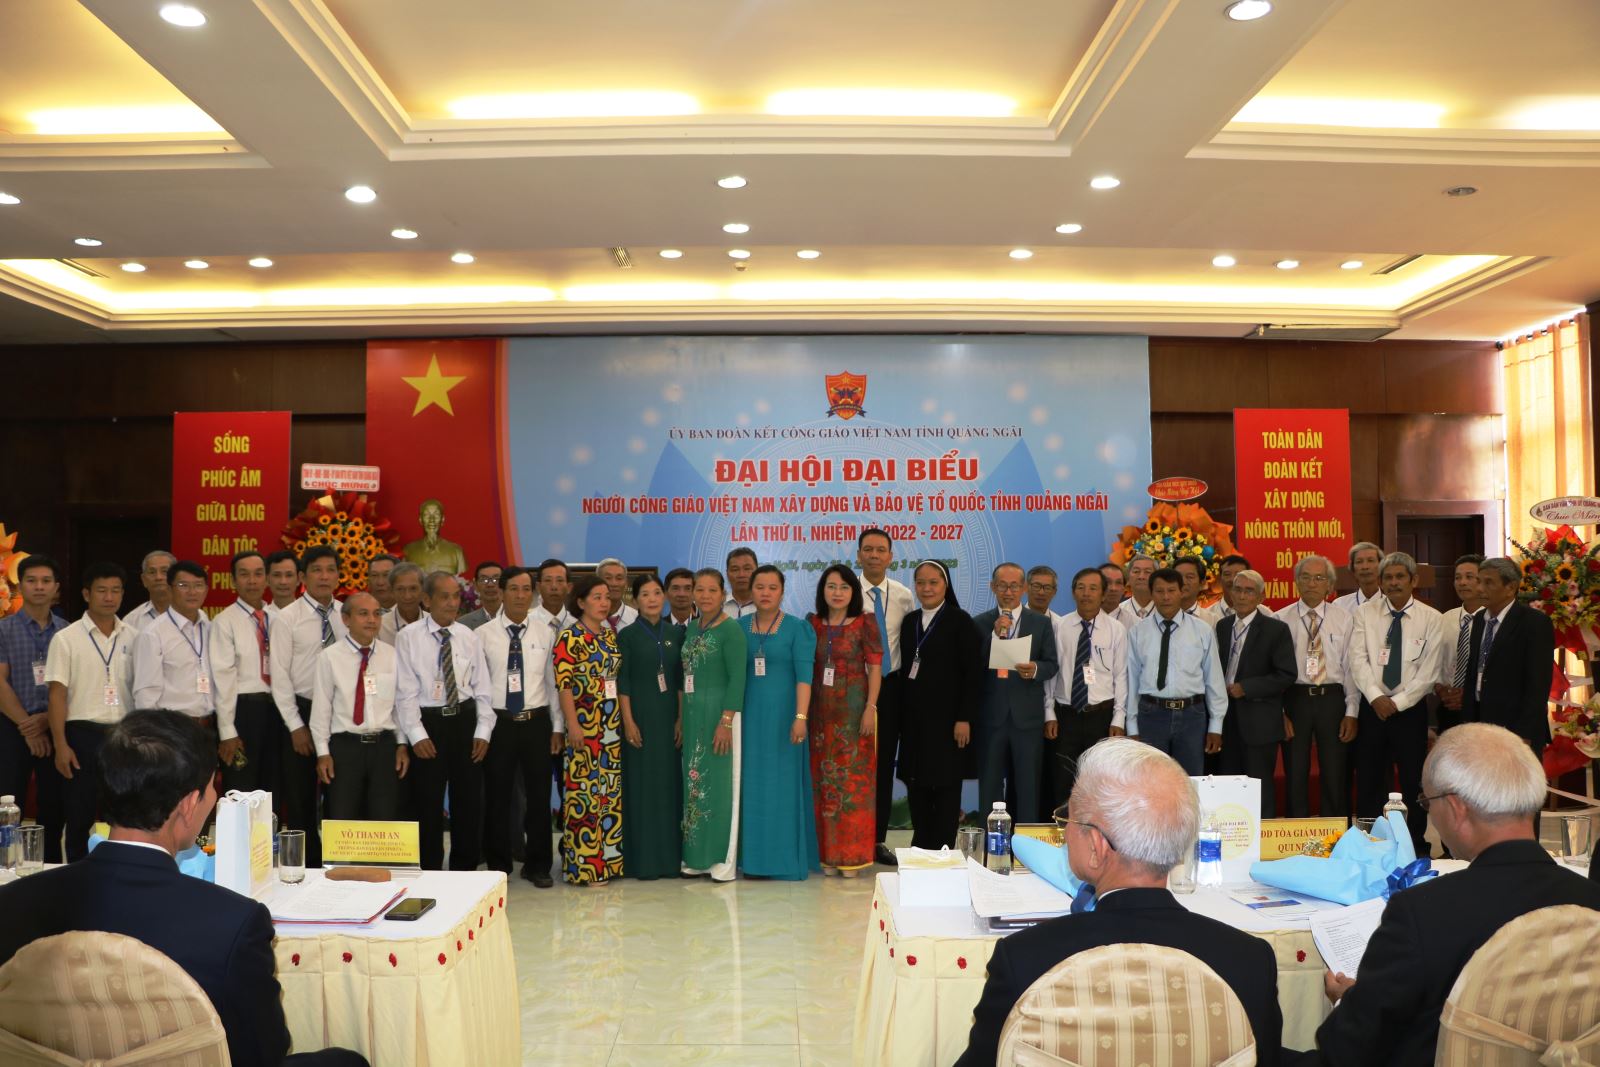 Ủy ban Đoàn kết Công giáo Việt Nam tỉnh nhiệm kỳ 2022 - 2027 ra mắt đại hội.